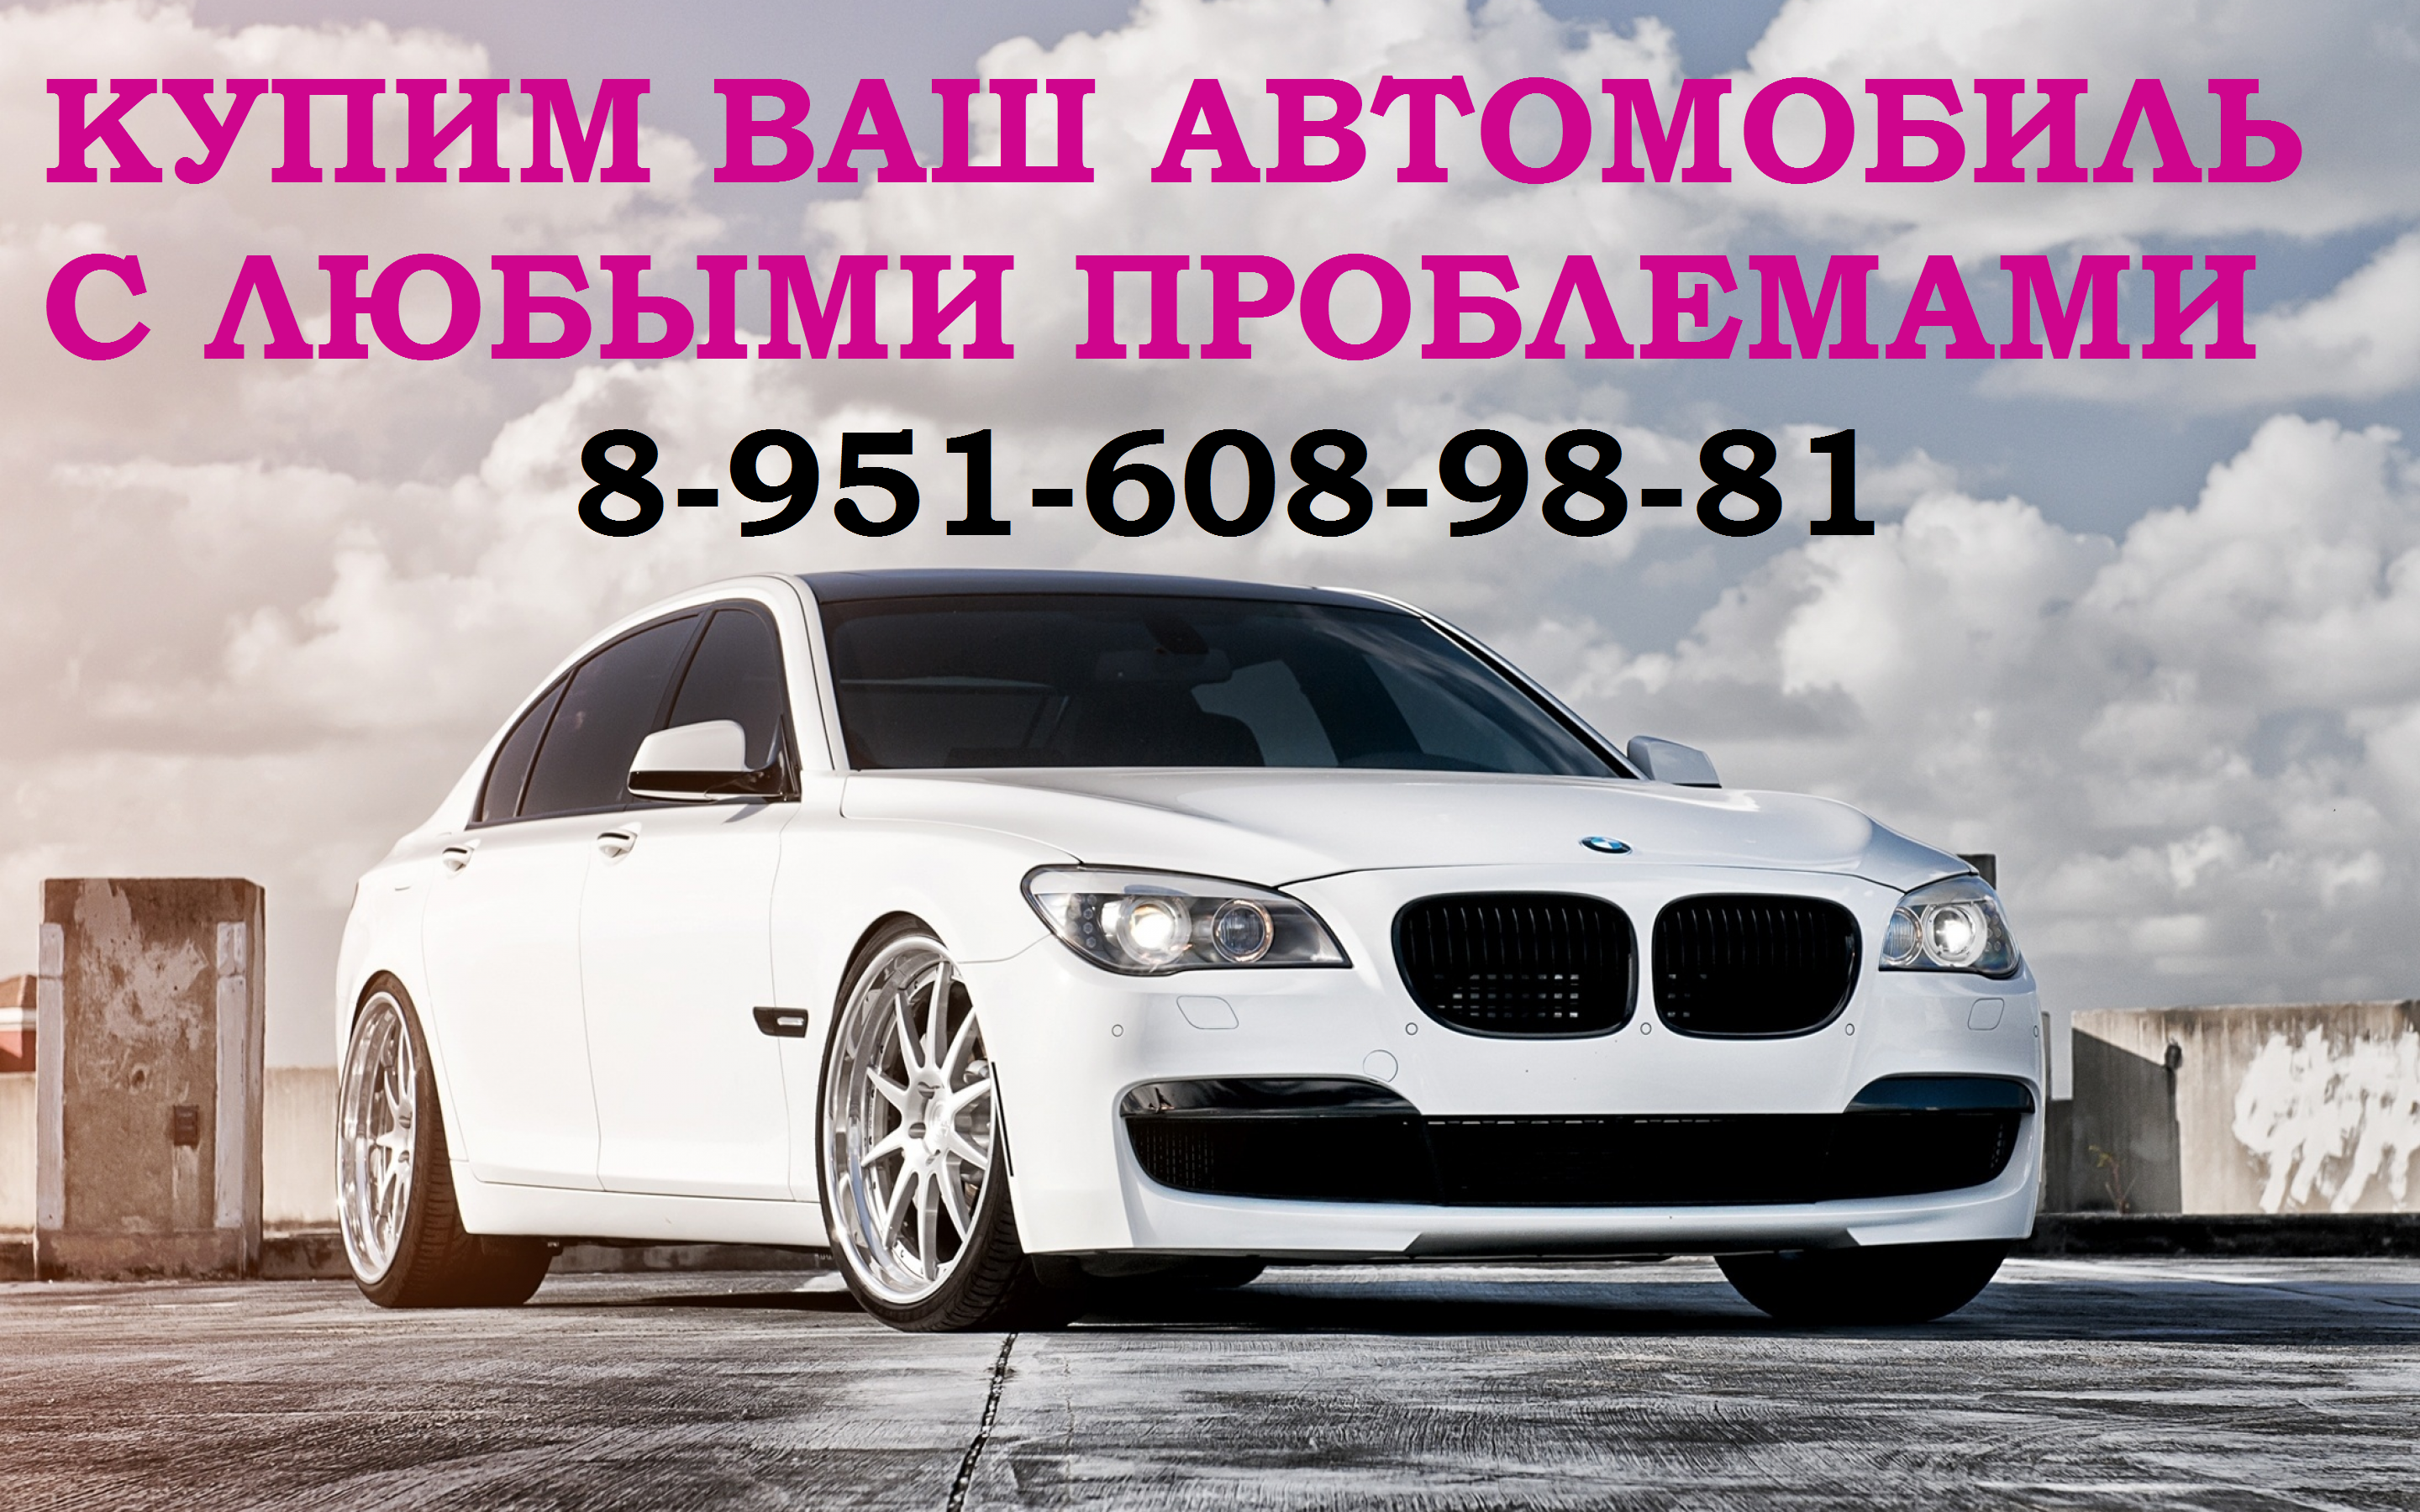 Купим любой автомобиль, с любыми проблемами 89516089881 Район Промышленновский download_img.png